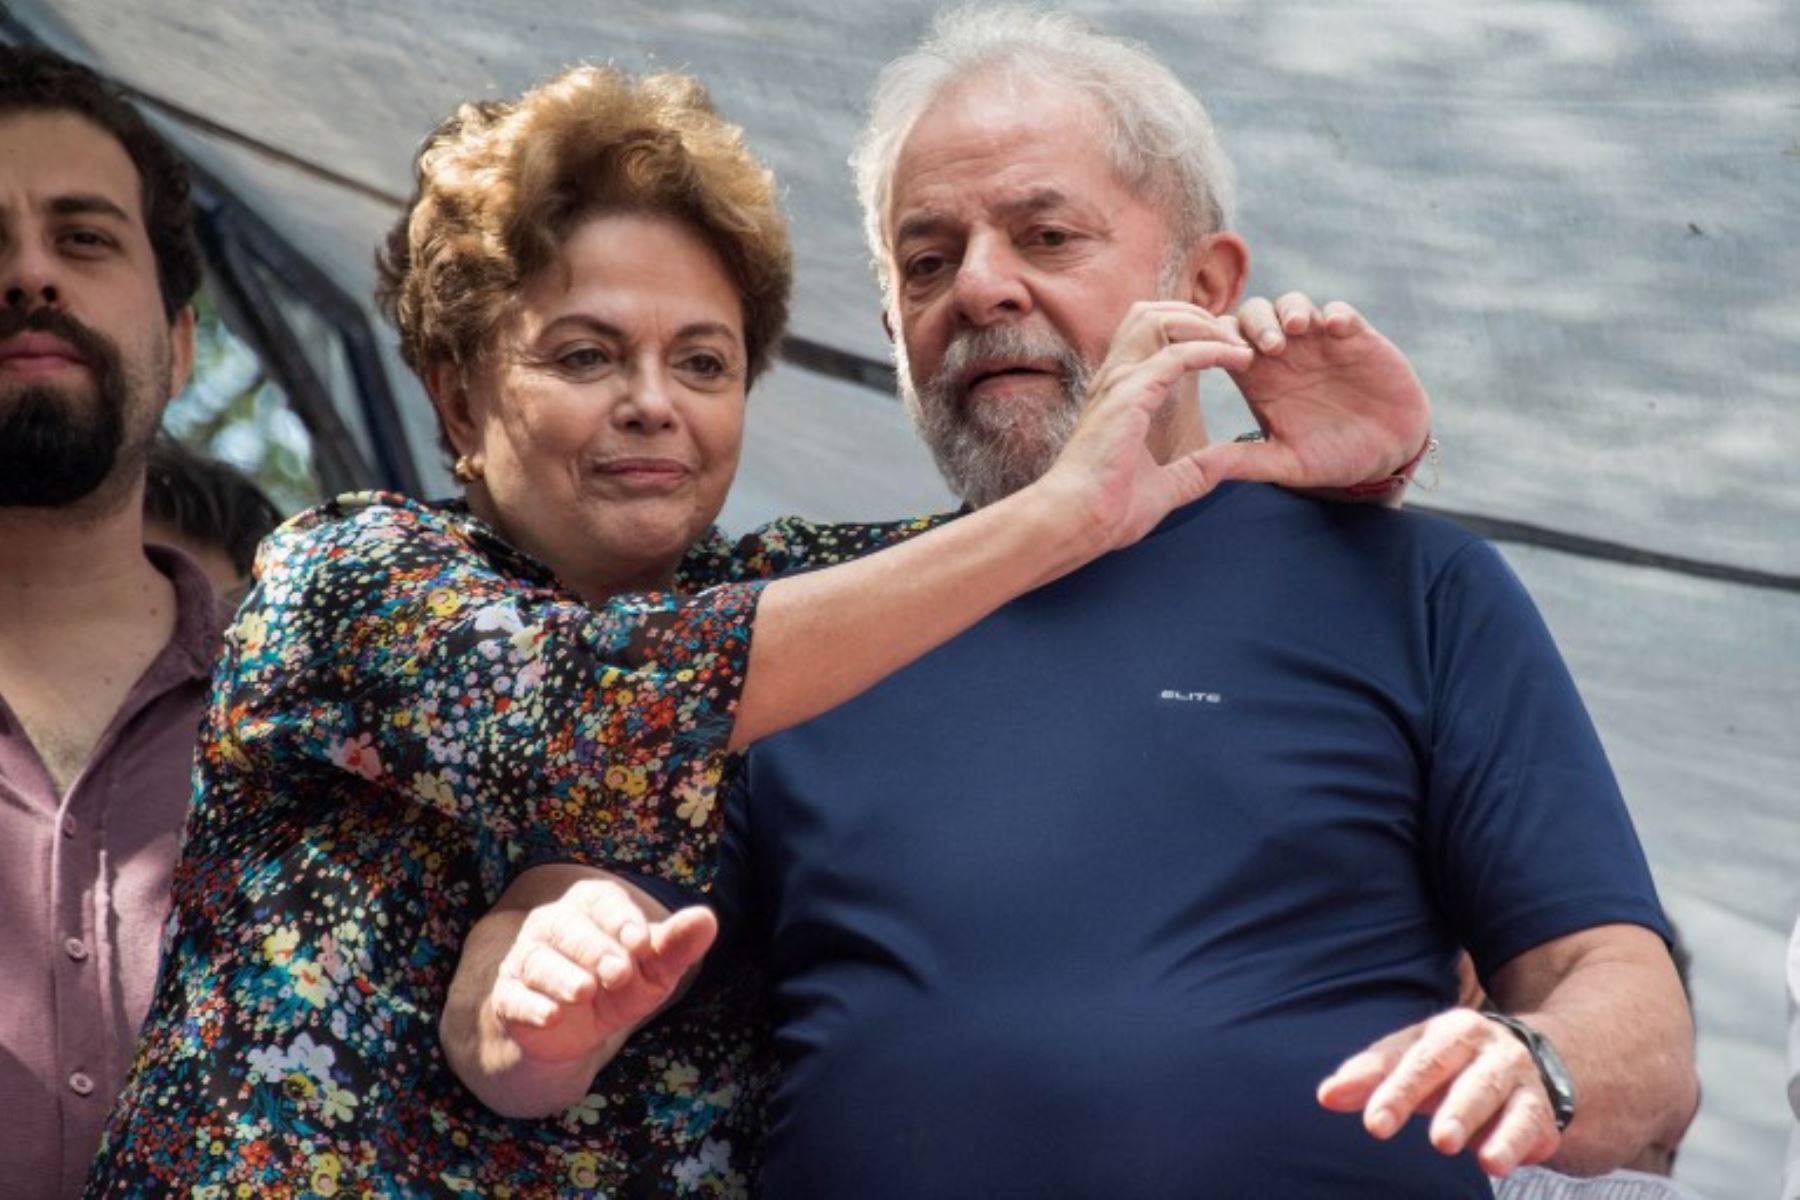 El ex presidente brasileño Luiz Inácio Lula da Silva (R) y la ex presidenta brasileña  Dilma Rousseff,  hicieron un gesto después durante una misa católica en memoria de la fallecida esposa de Lula, Marisa Leticia, en el sindicato de trabajadores metalúrgicos Sao Bernardo do Campo.Foto:AFP